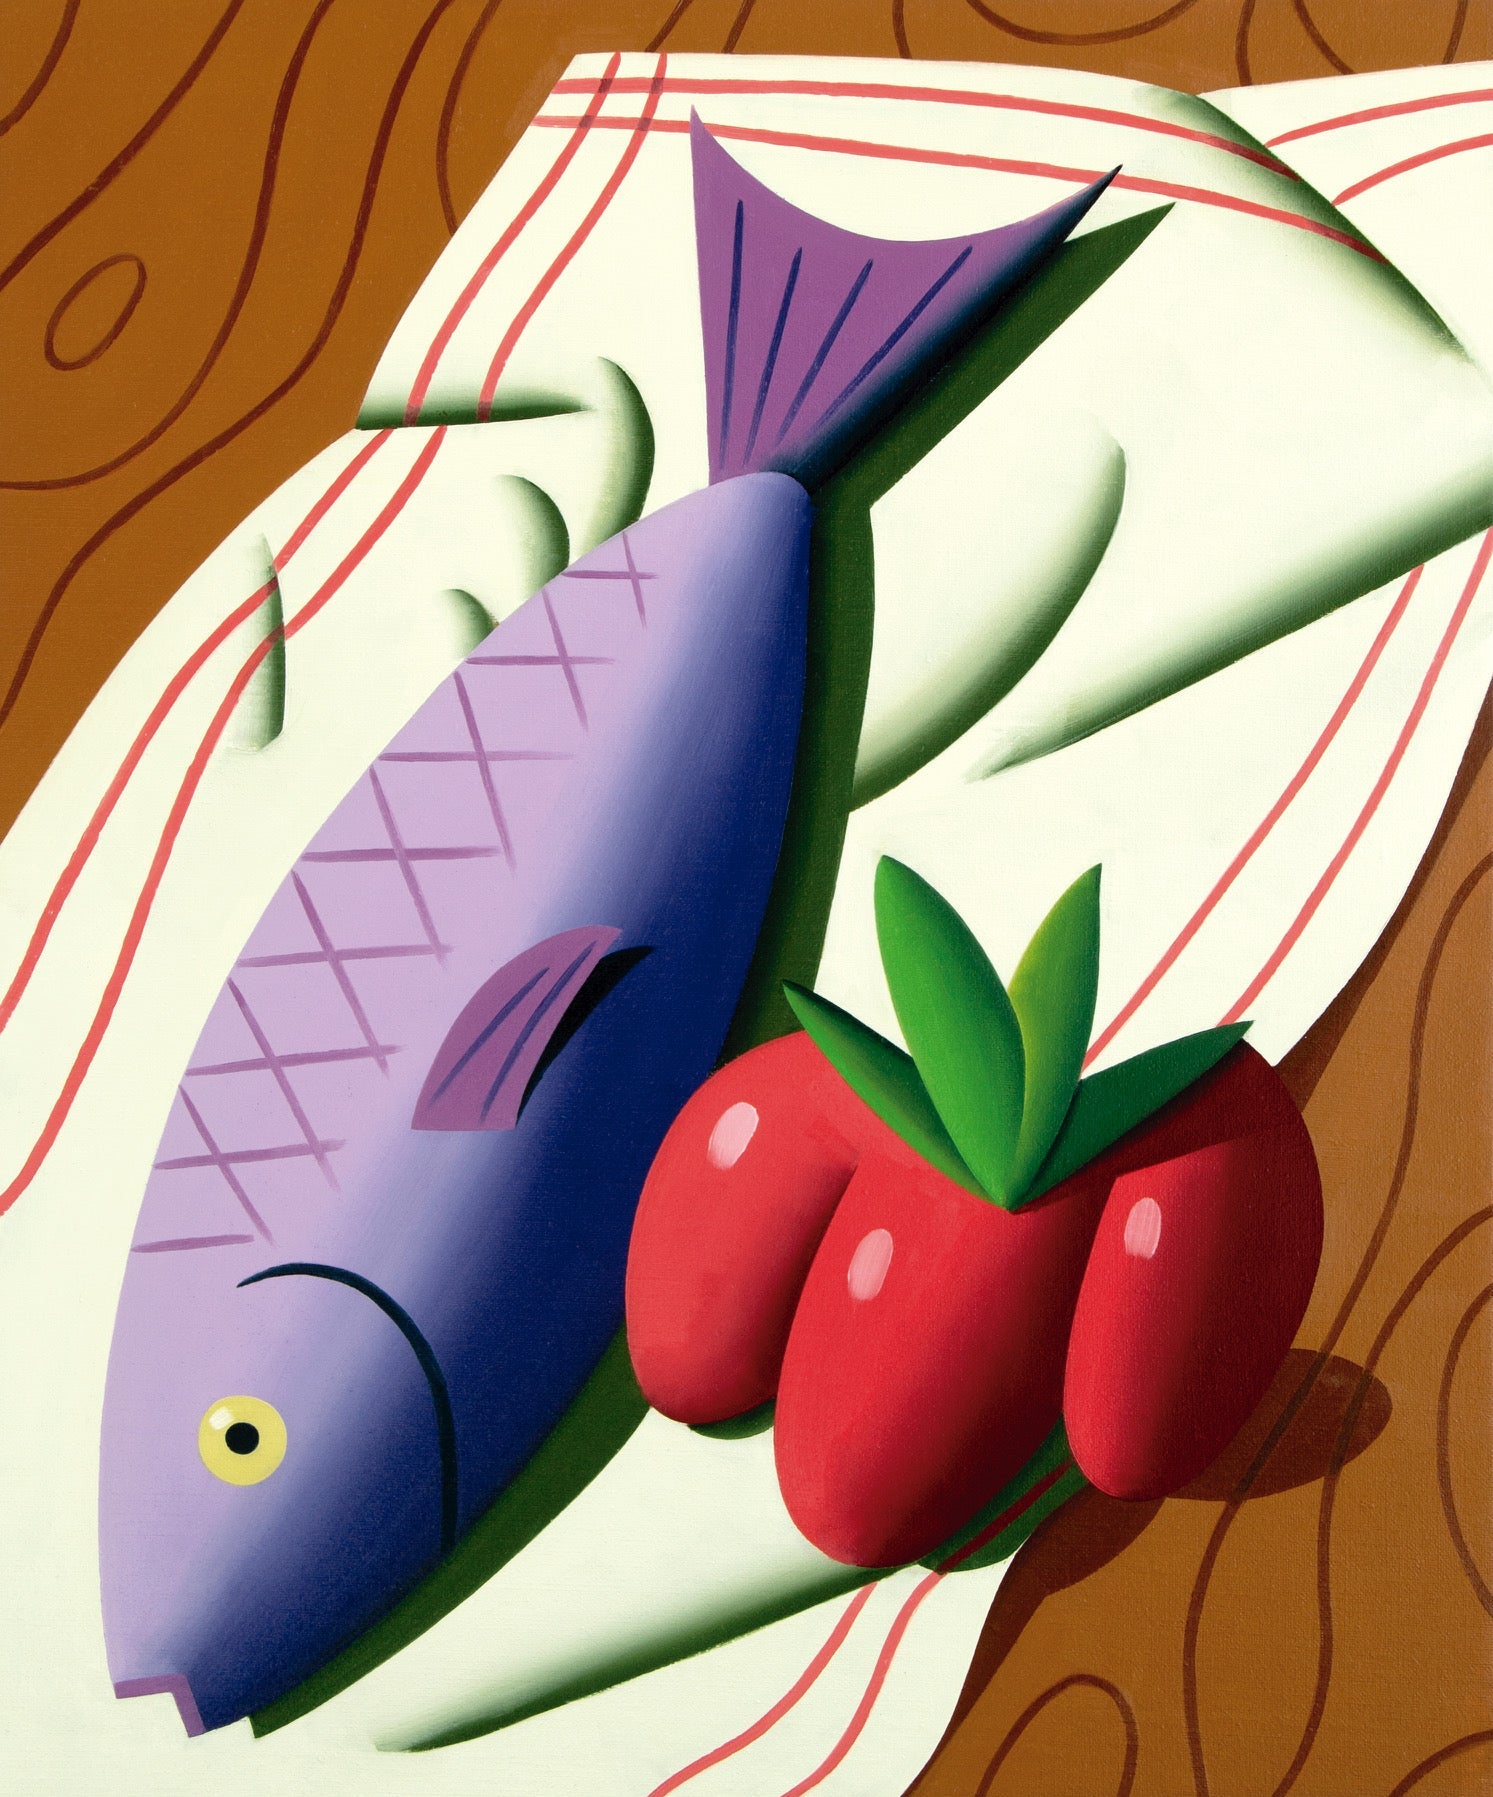 Fish and tomato (vallotton) by Juan de La Rica